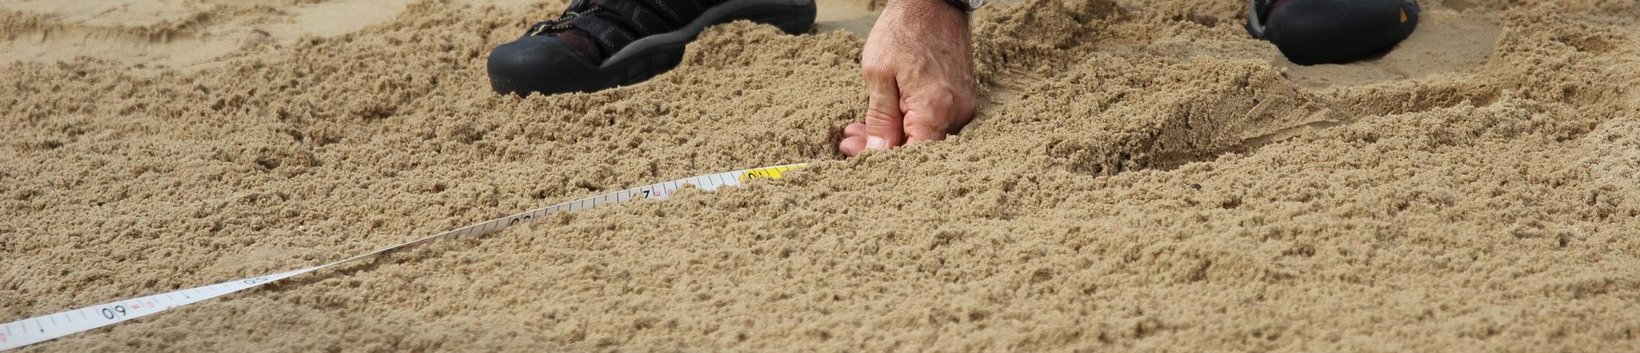 Messen: Zu sehen ist ein Maßband im Einsatz beim Weitsprung im Sand